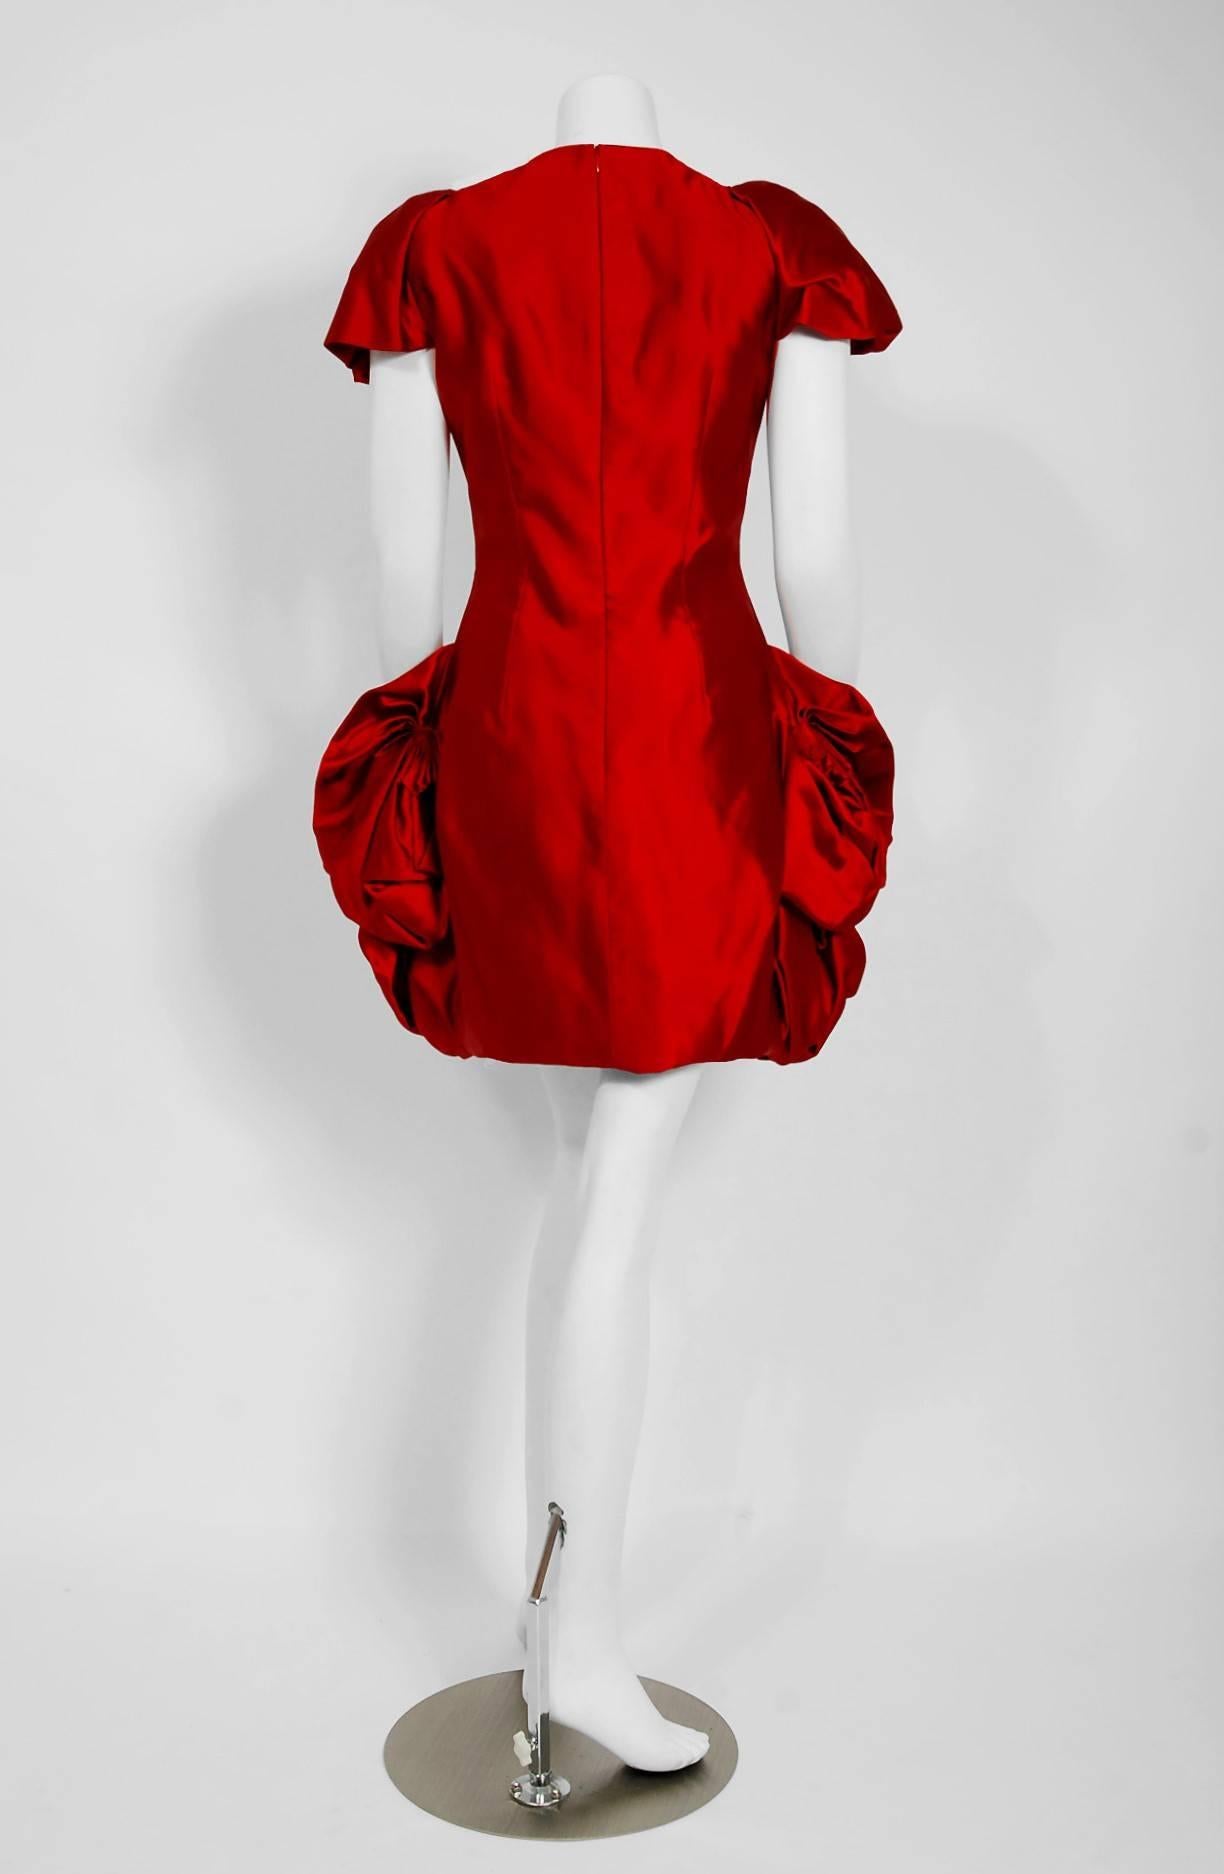 2010 Alexander McQueen Final Runway Collection Red Satin Metallic Bullion Dress 3